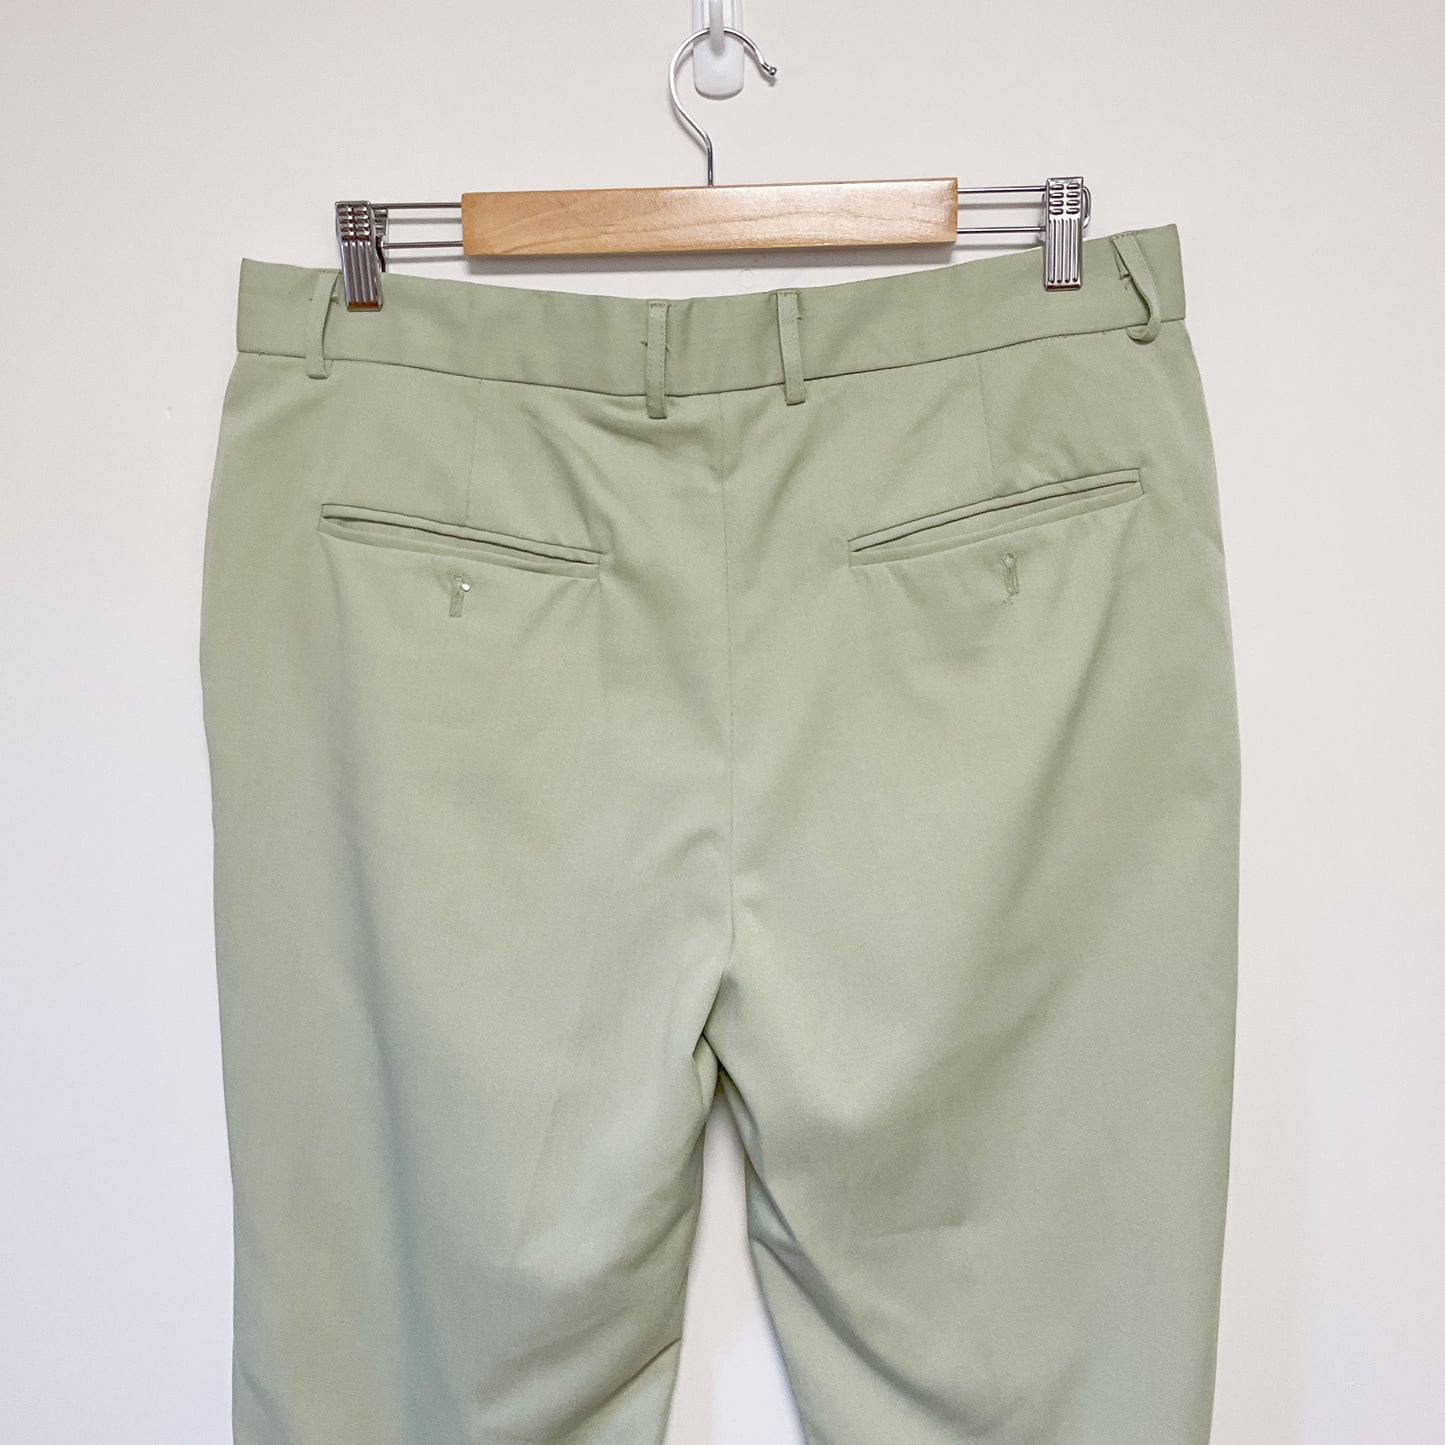 Shein - Pastel Green Pants